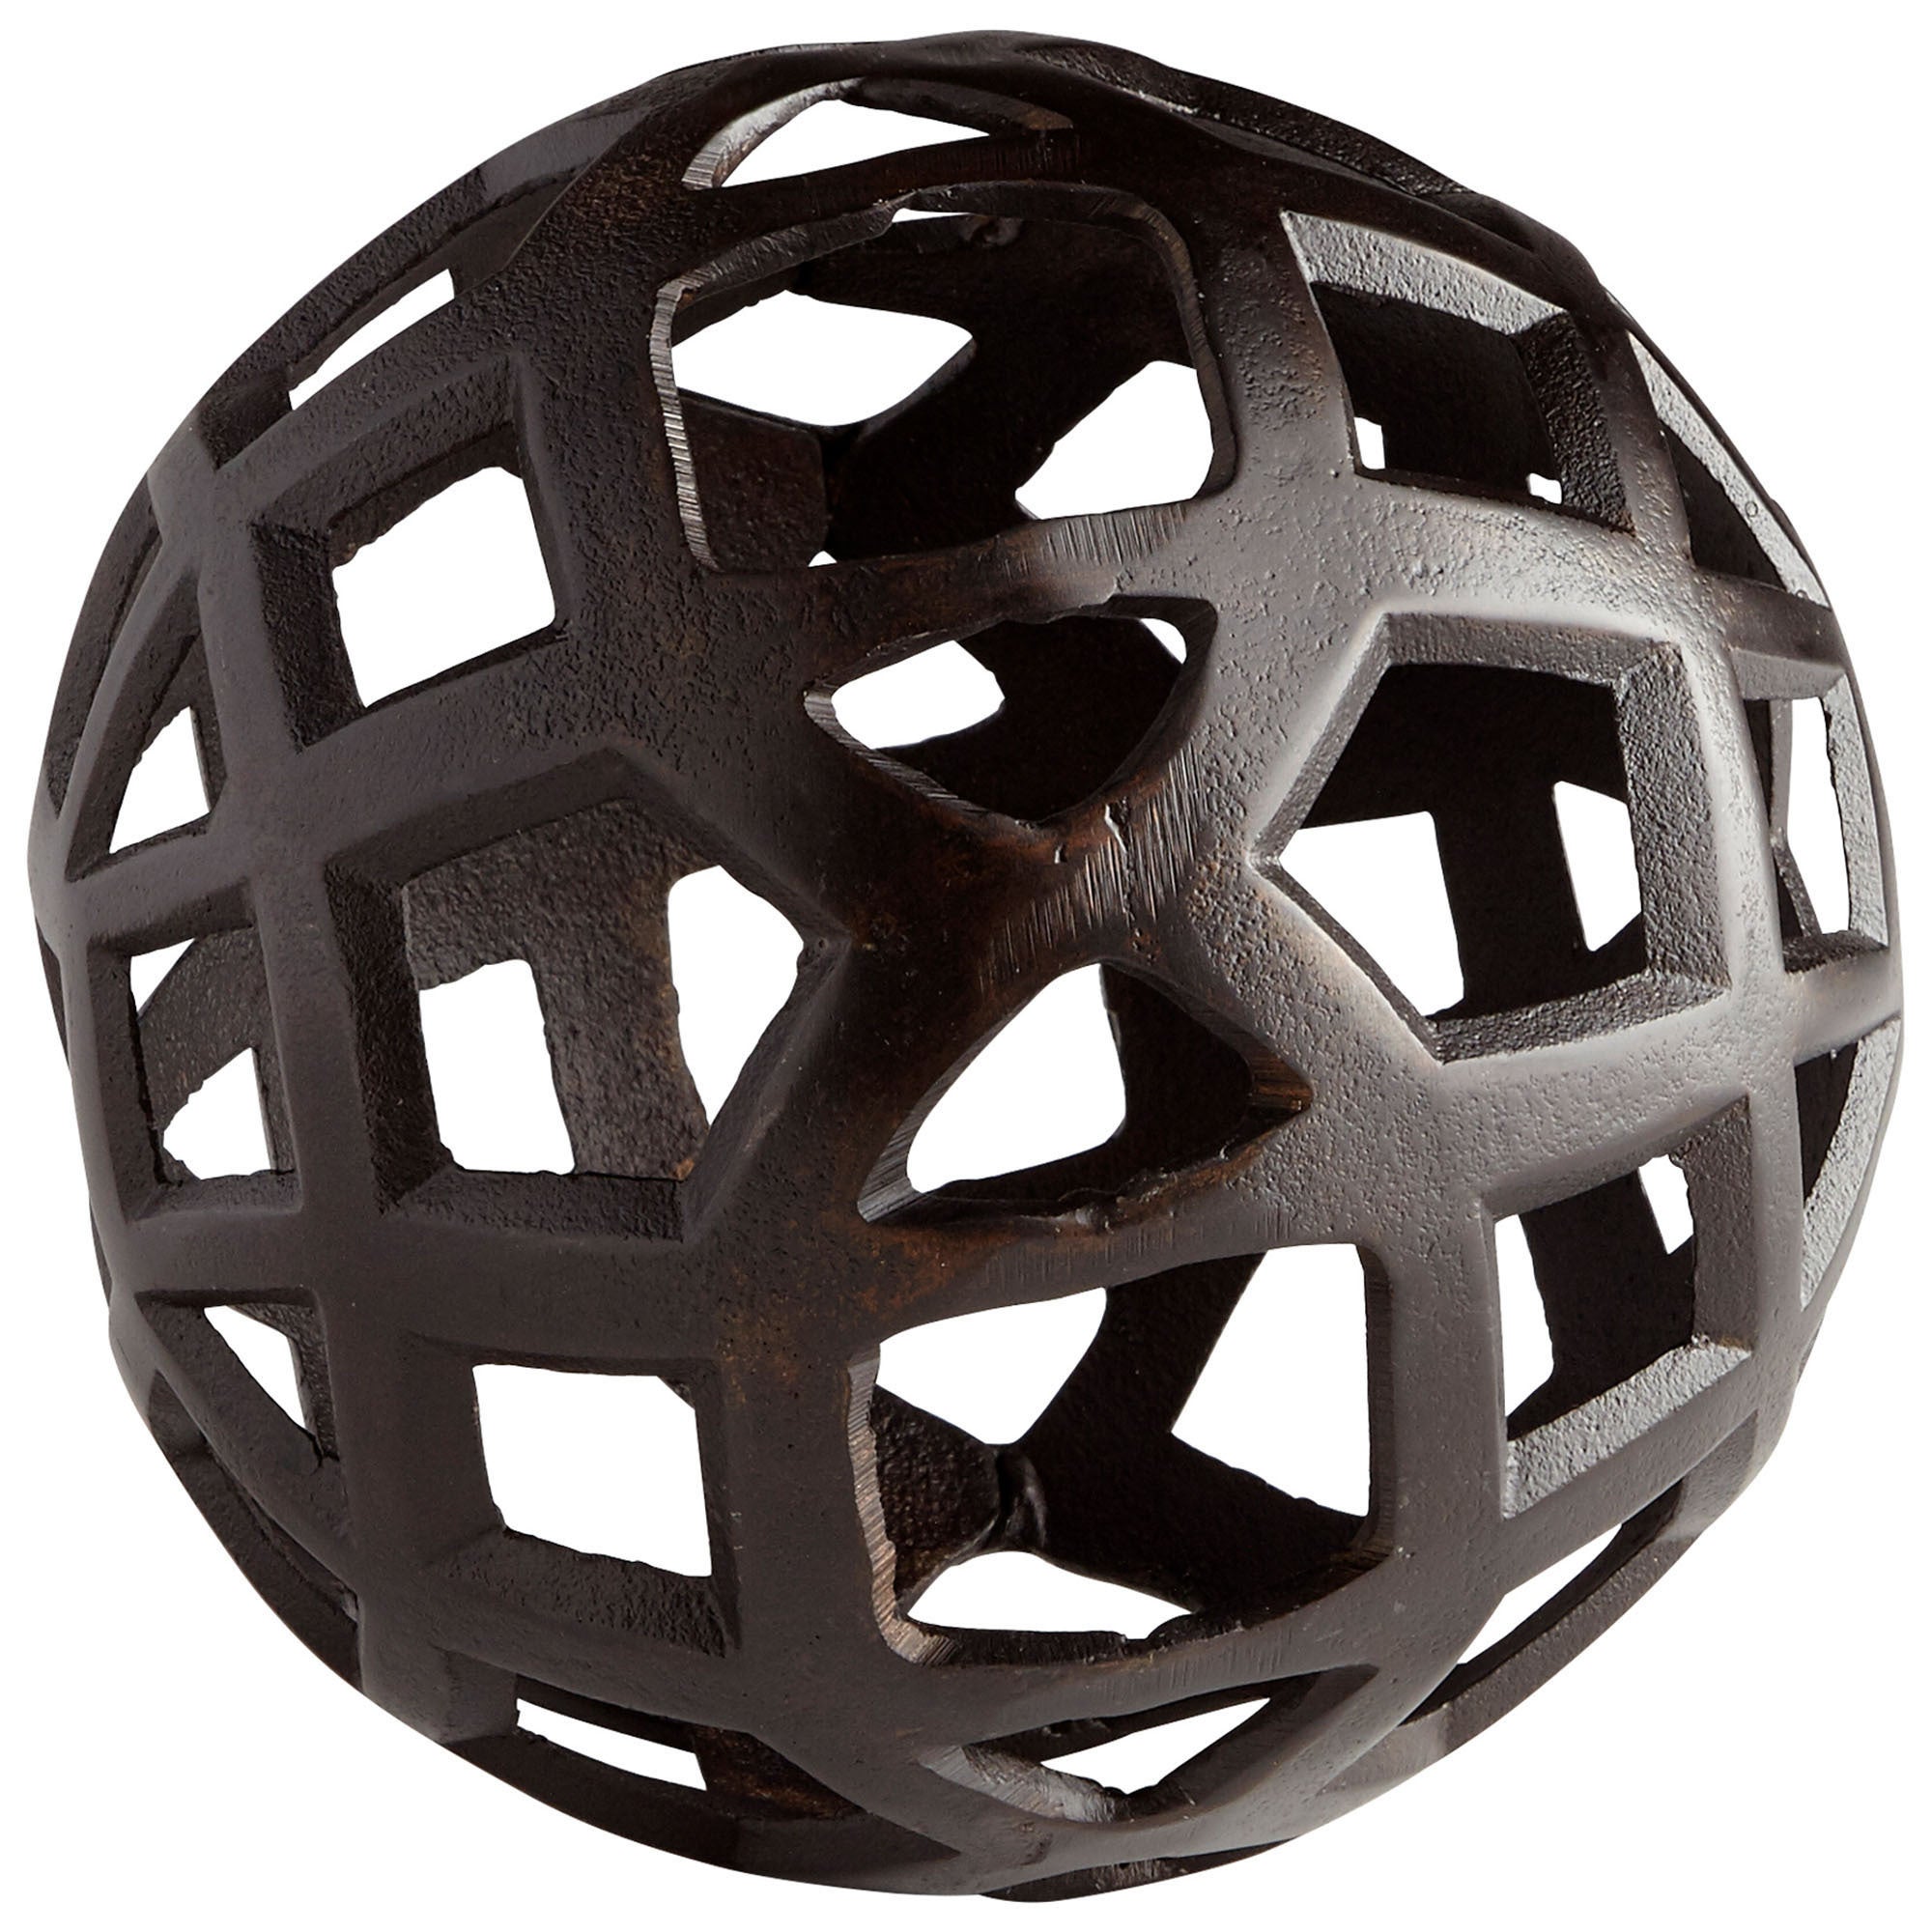 Shape Shifter Sphere, Old World - Medium - spheres